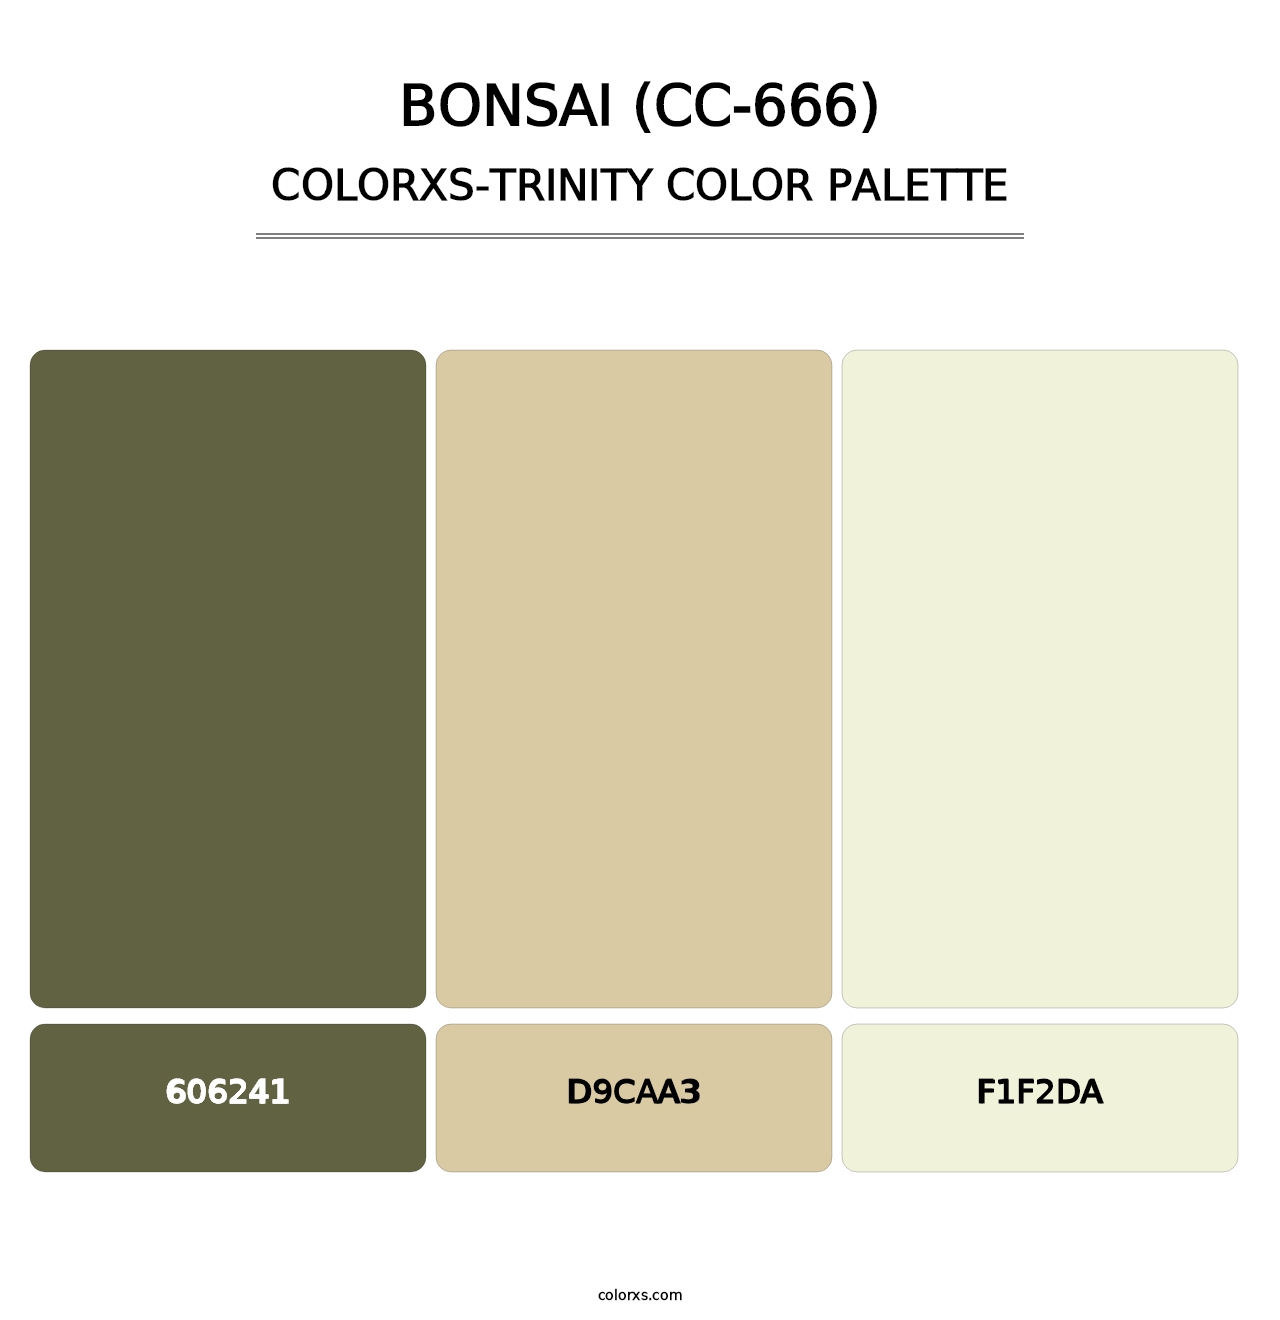 Bonsai (CC-666) - Colorxs Trinity Palette